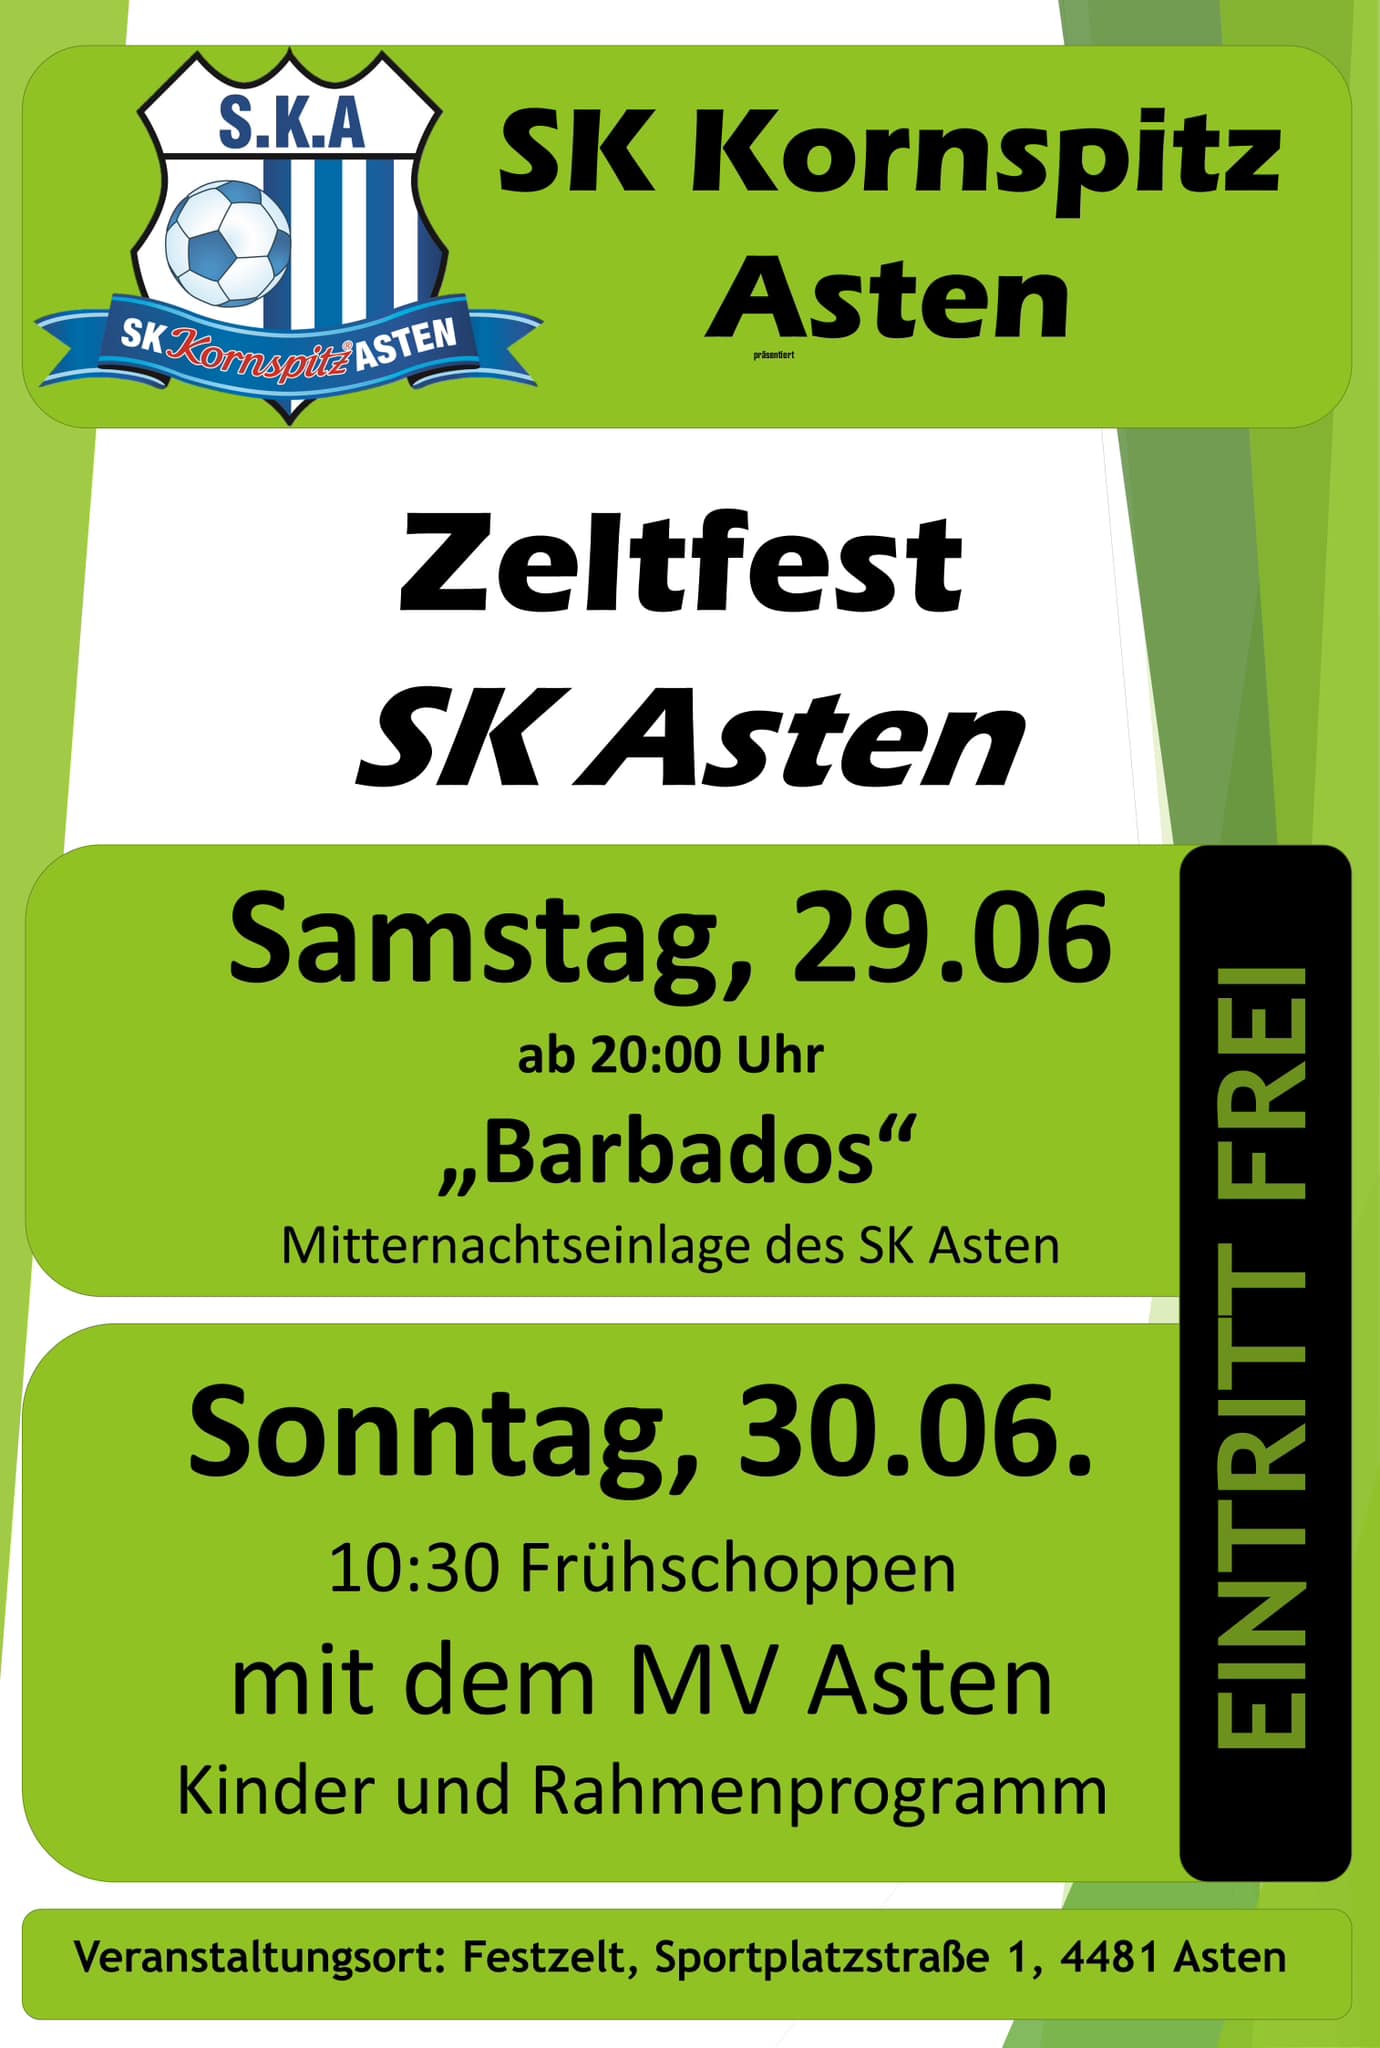 SK Asten Zeltfest